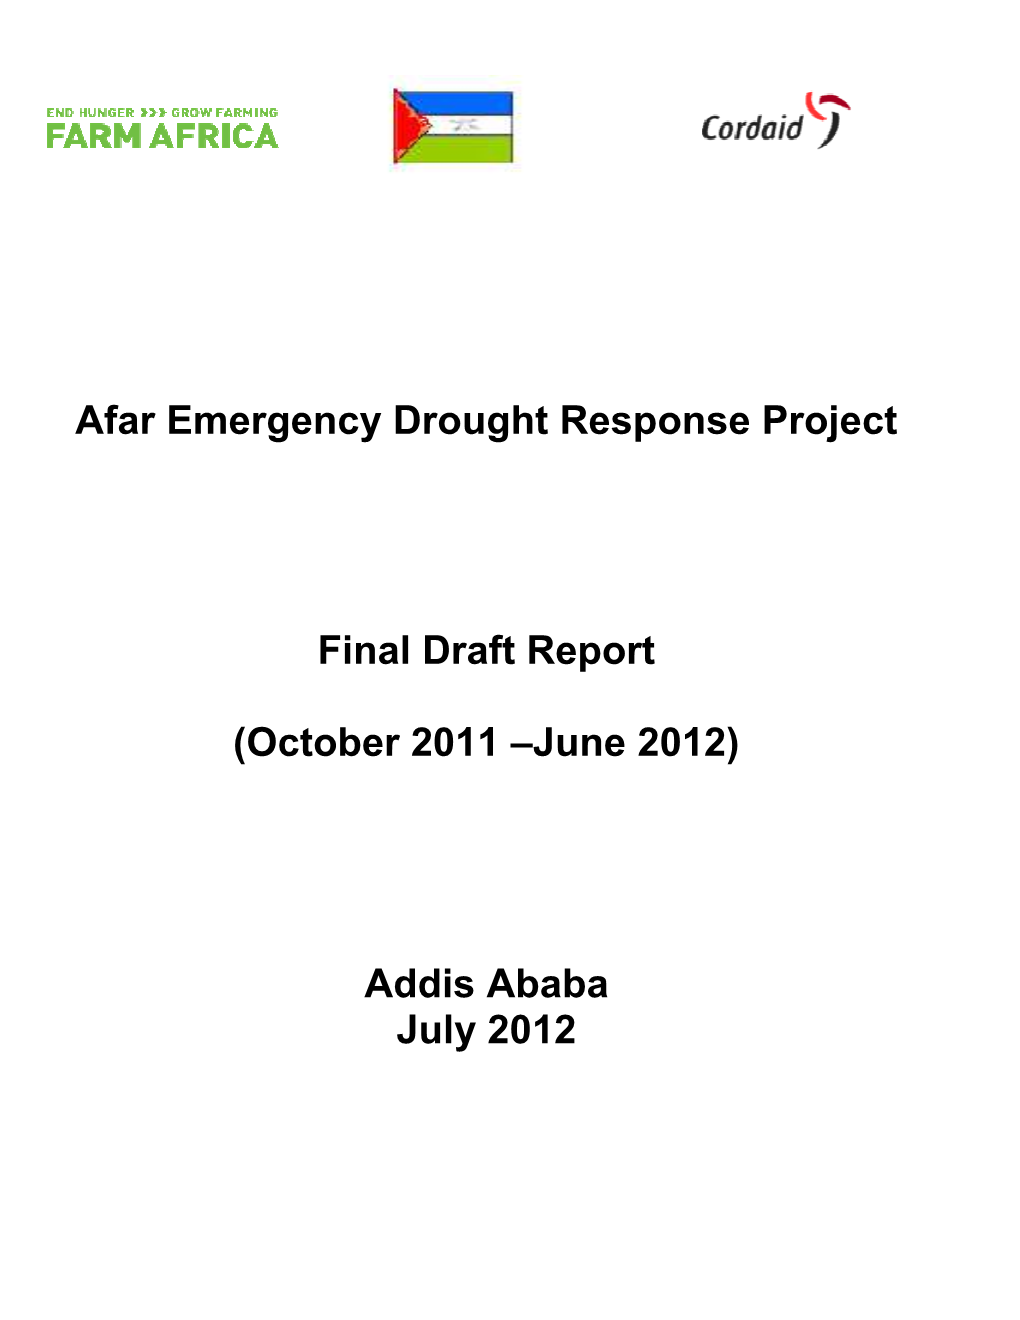 AEDRP Final Report First Draft-Tenna2